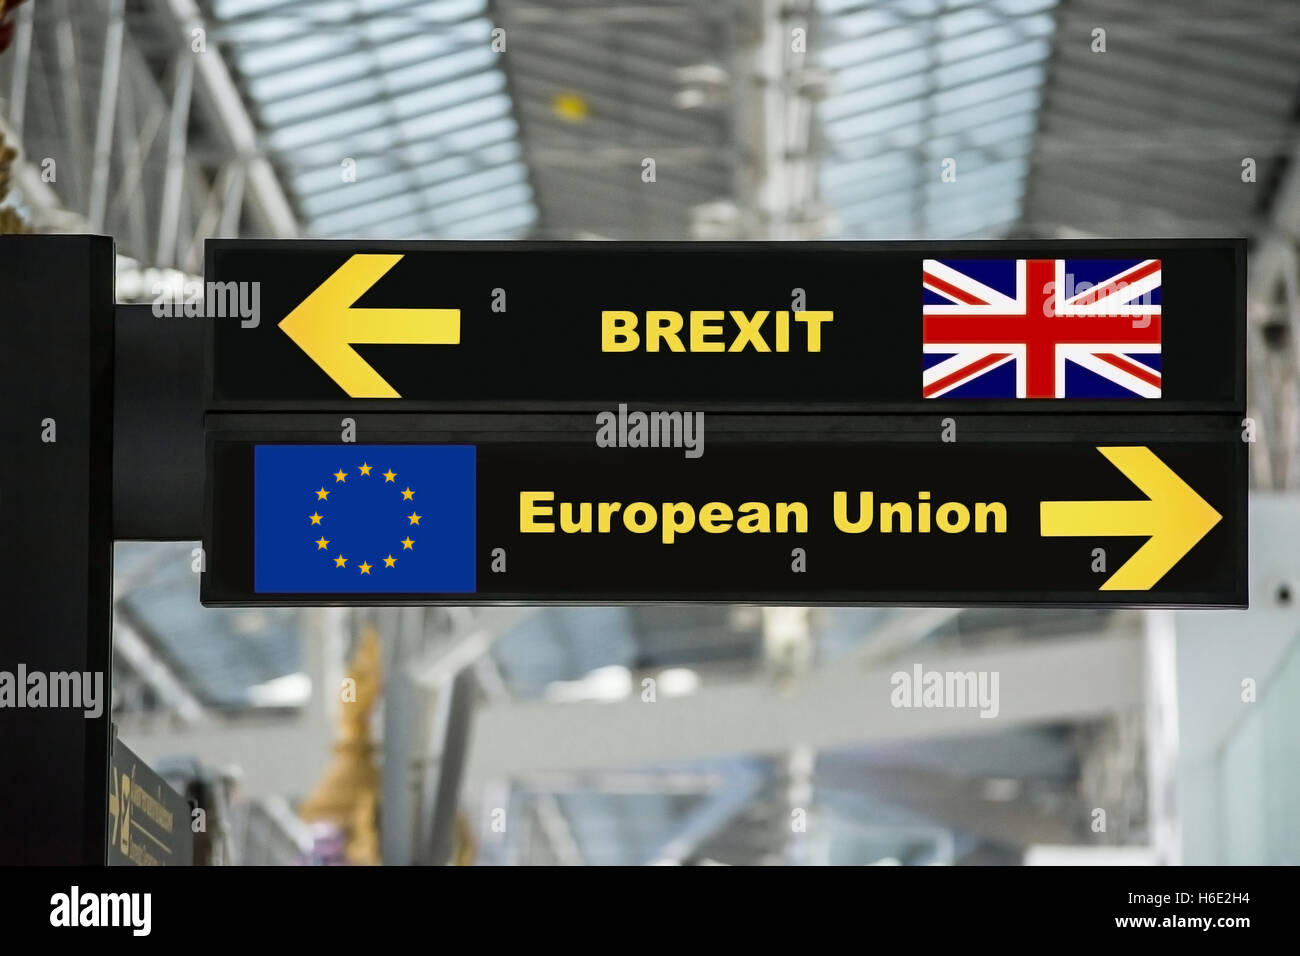 Brexit o salir en el aeropuerto británico letrero con fondo borroso. Concepto Brexit. Foto de stock